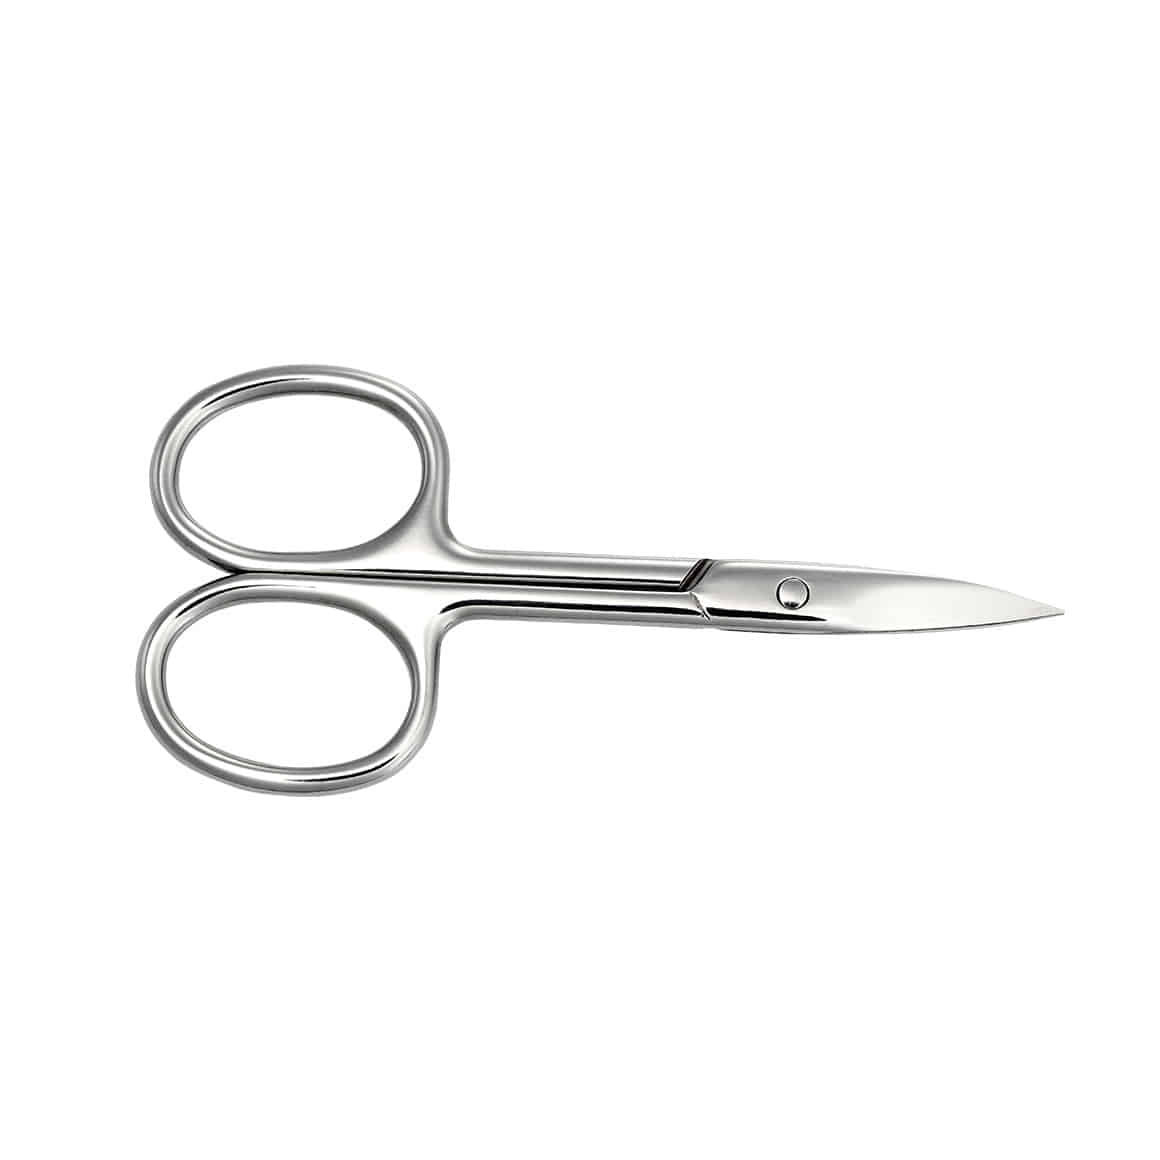 Easy Cut Scissors - Tools & Care - Tools - Dashing Diva Singapore